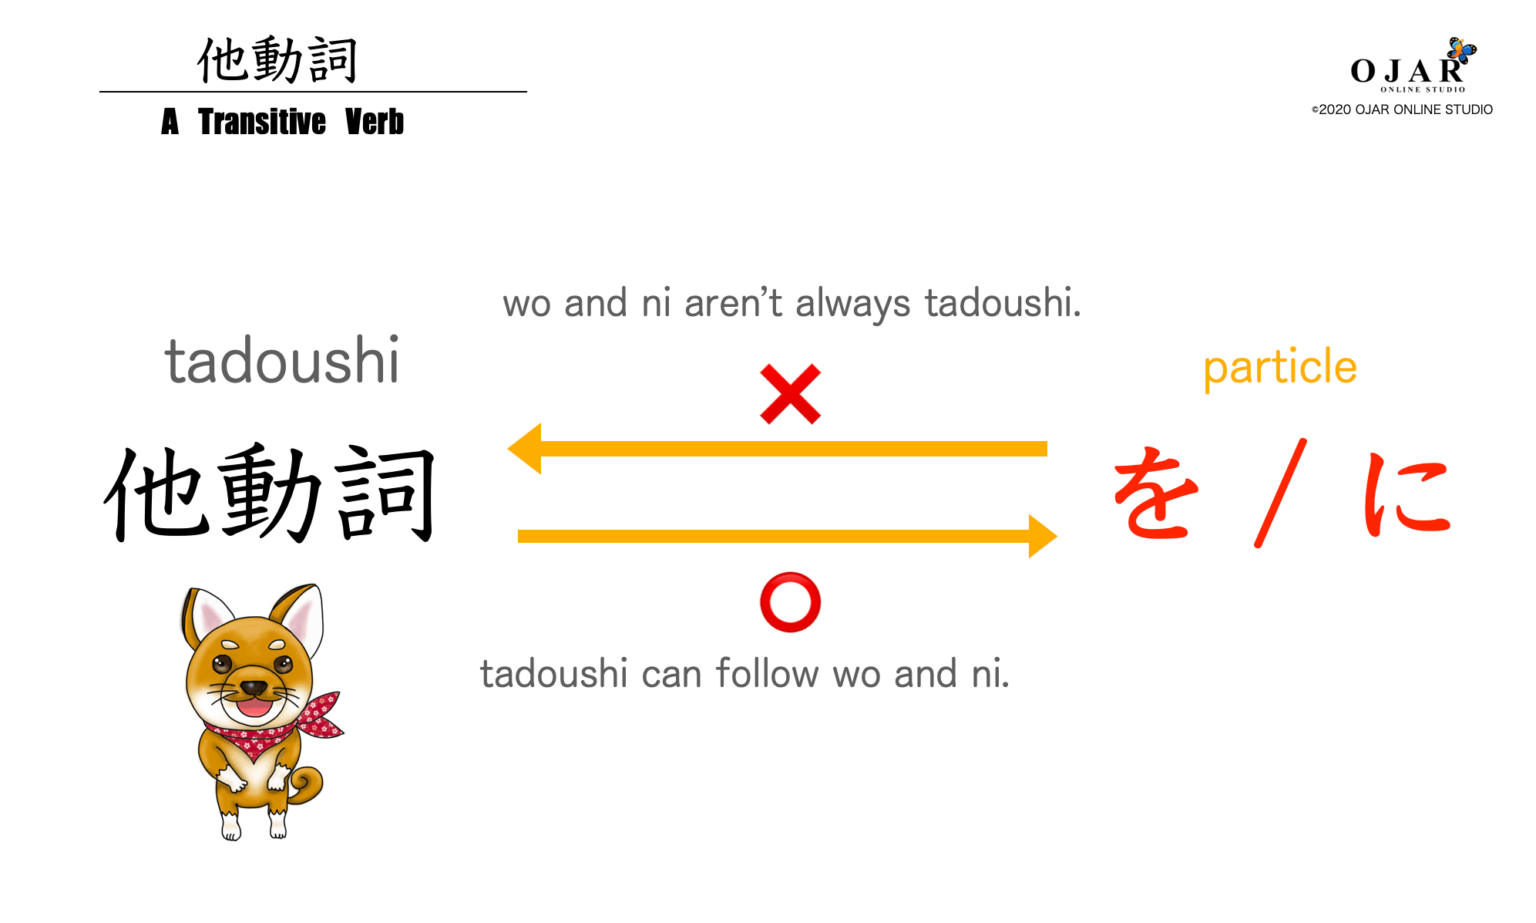 japanese-lesson-15-intransitive-verbs-vs-transitive-verbs-jidoushi-vs-tadoushi-ojar